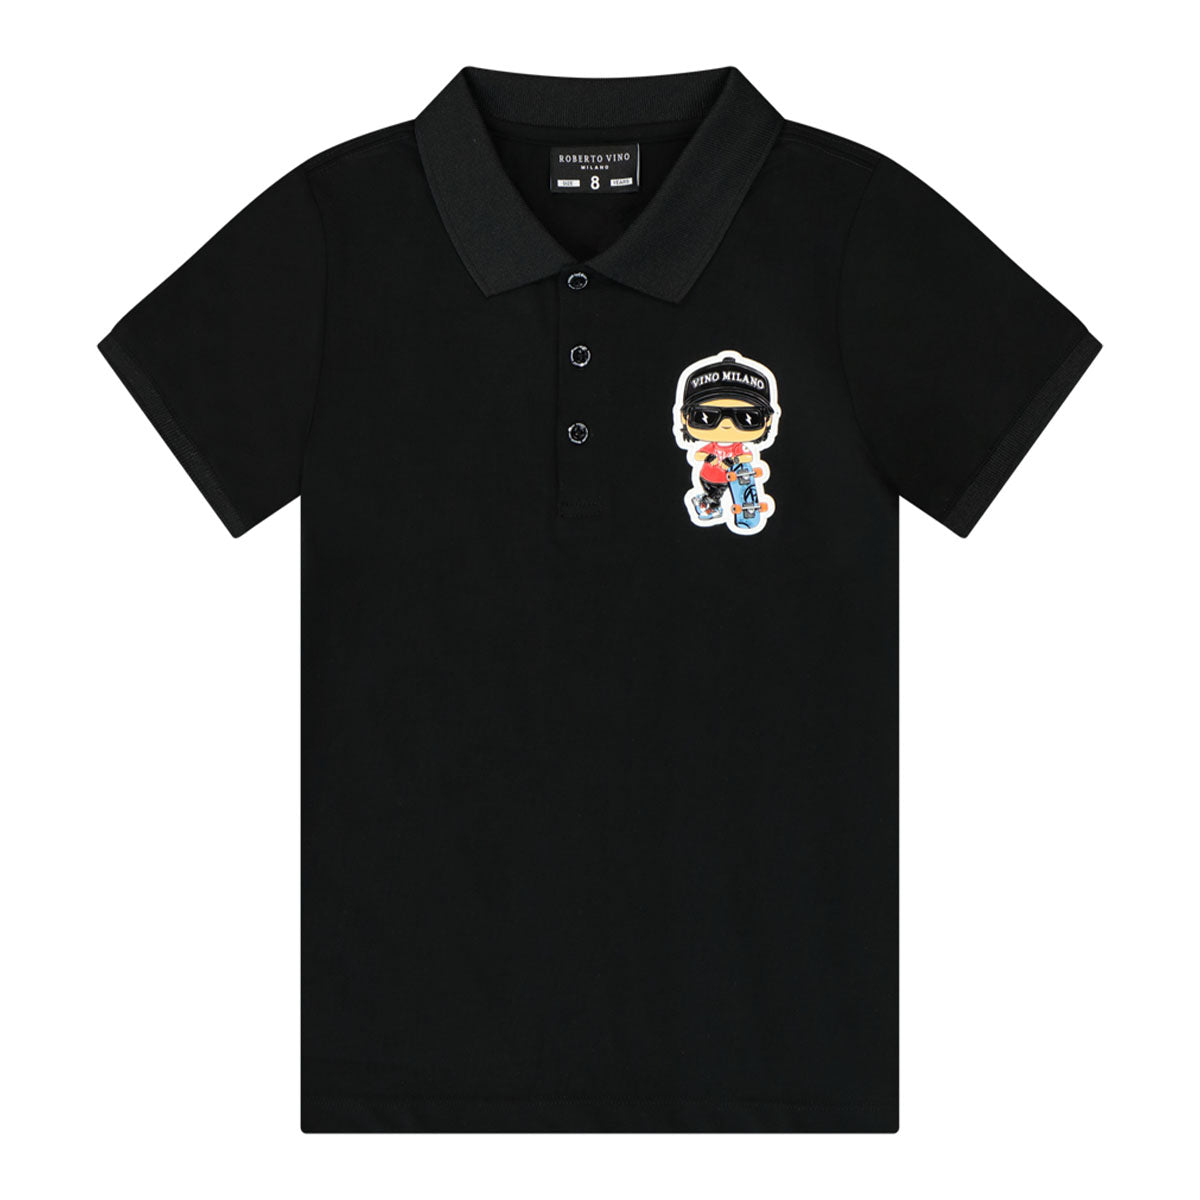 חולצת צווארון ROBERTO VINO לוגו אחורי לילדים